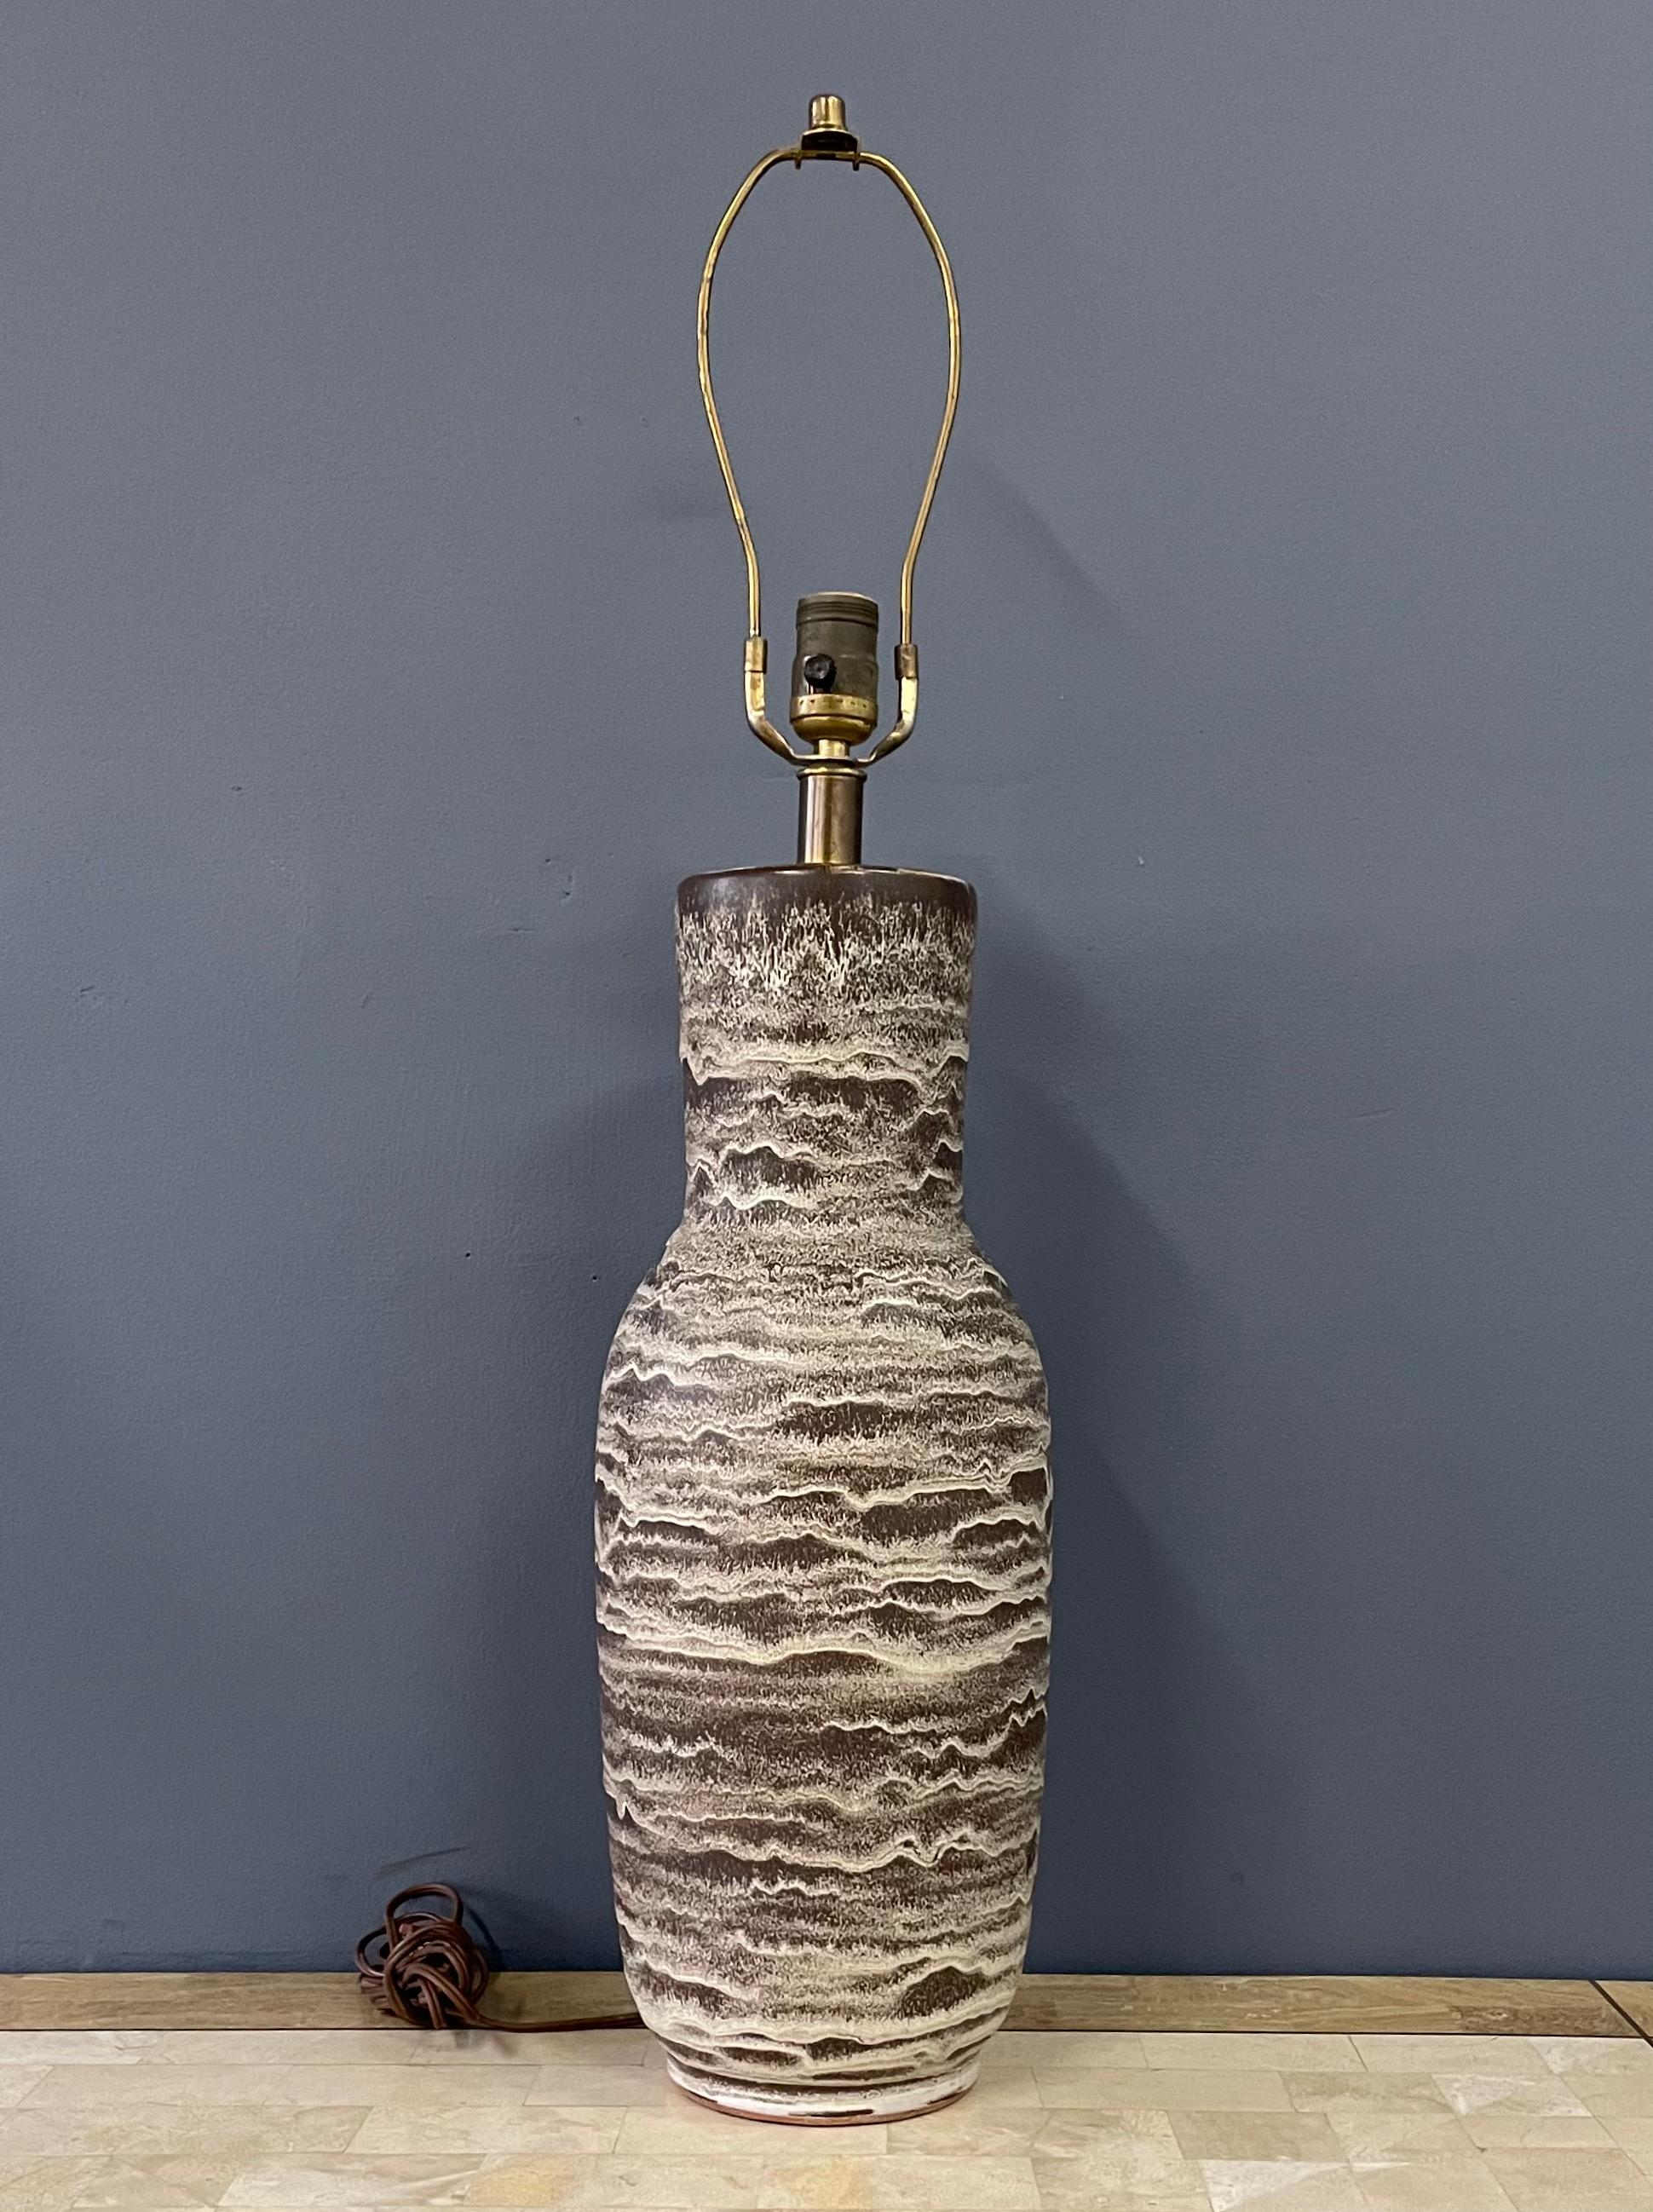 Lampe de table en céramique à double ébrasement, fabriquée à la main par Design Technics, datant du milieu du siècle dernier. Cette colonne évasée présente un motif strié dans des tons naturels de taupe, brun foncé, crème, blanc cassé et sable.